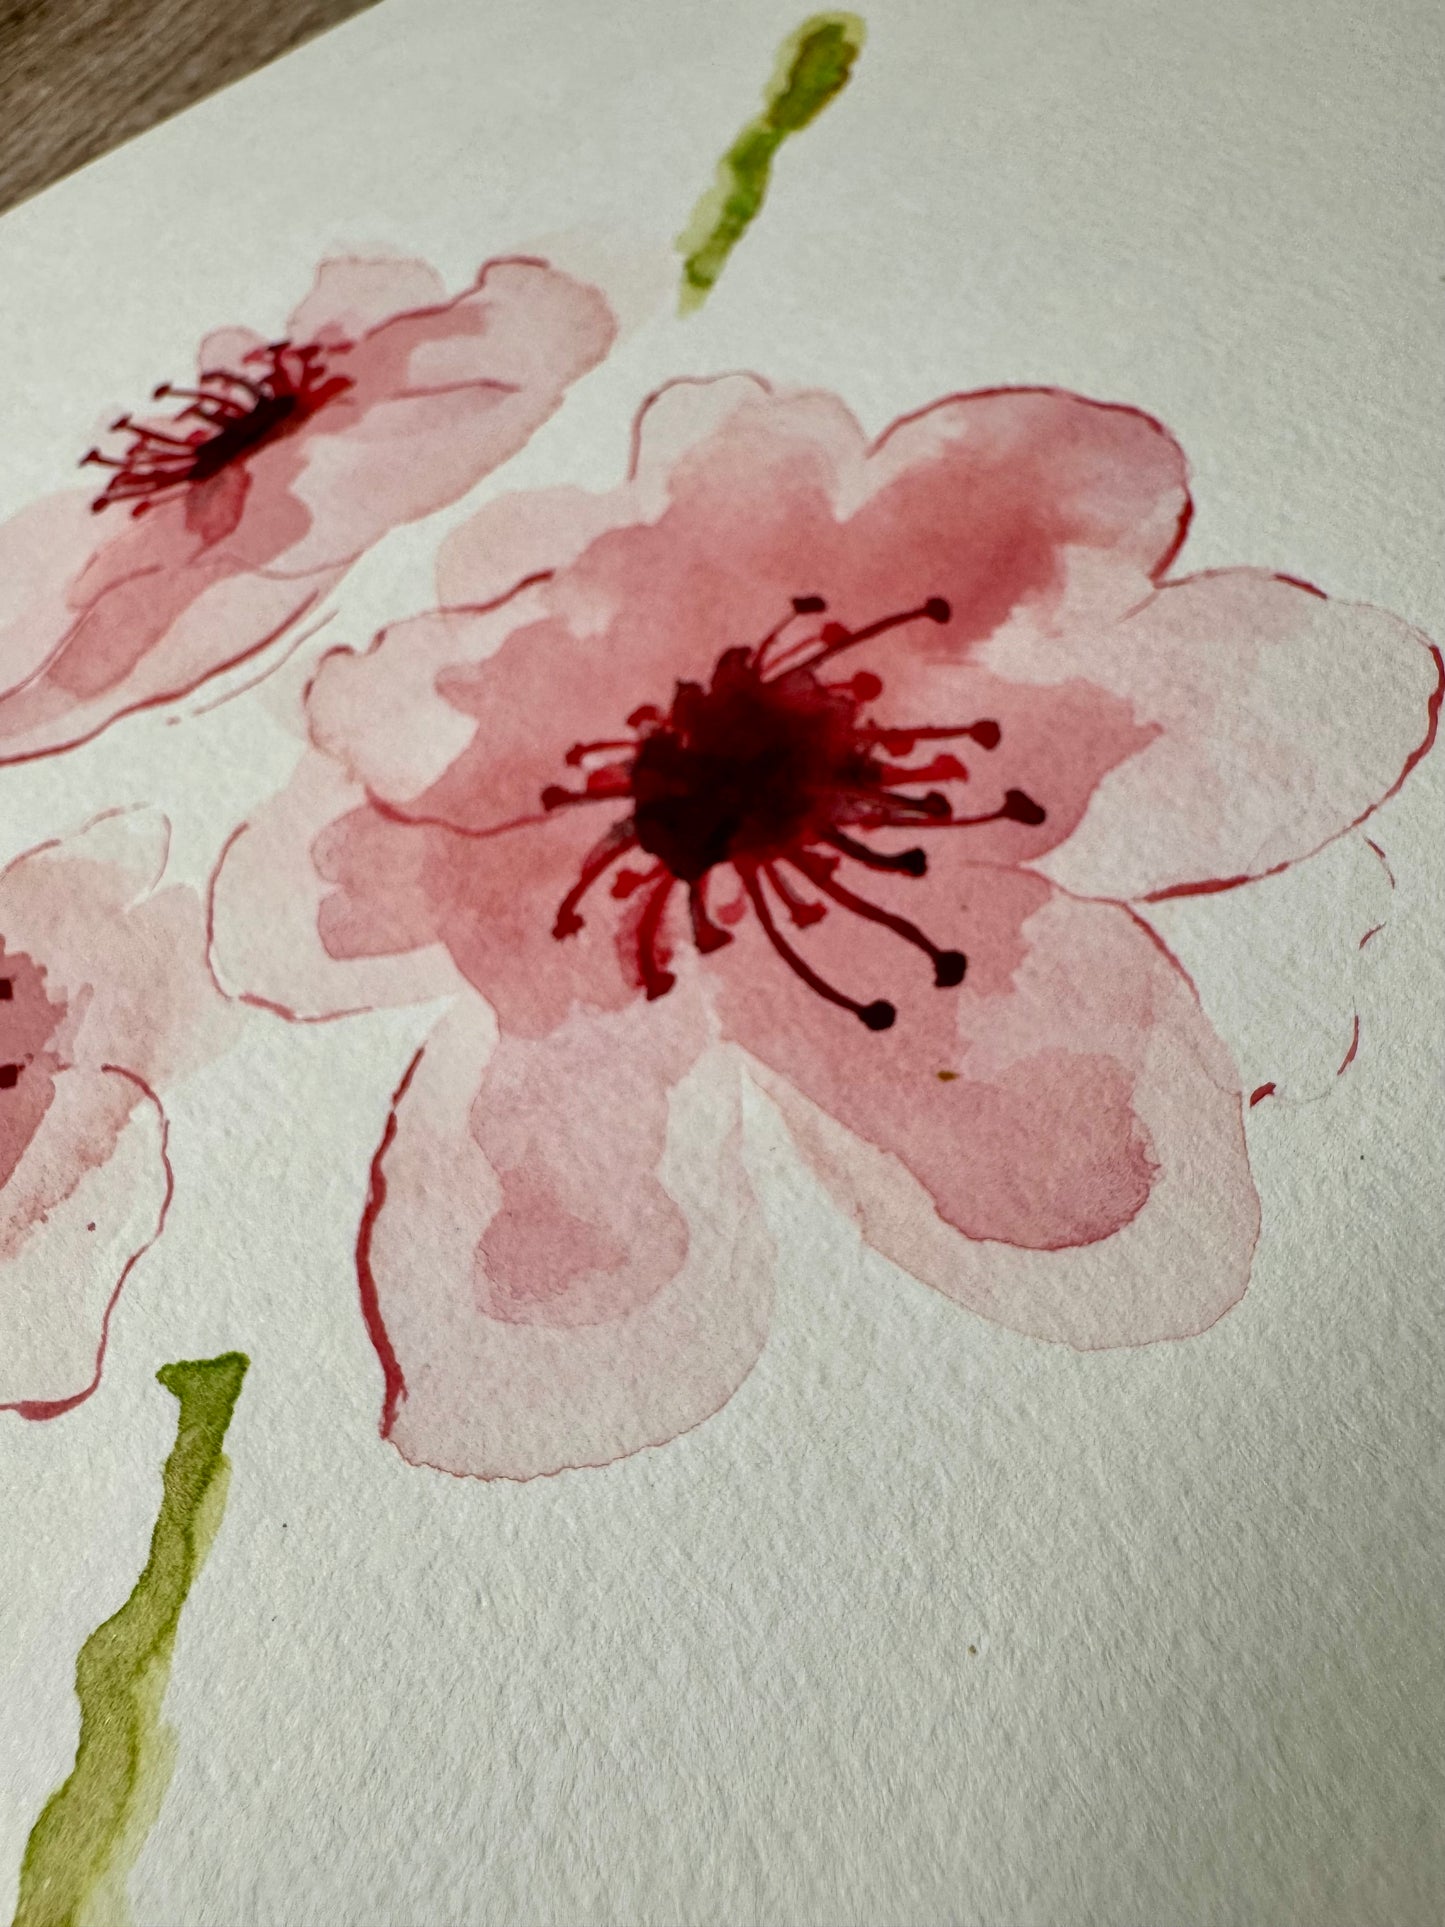 Flowers: Original Watercolor